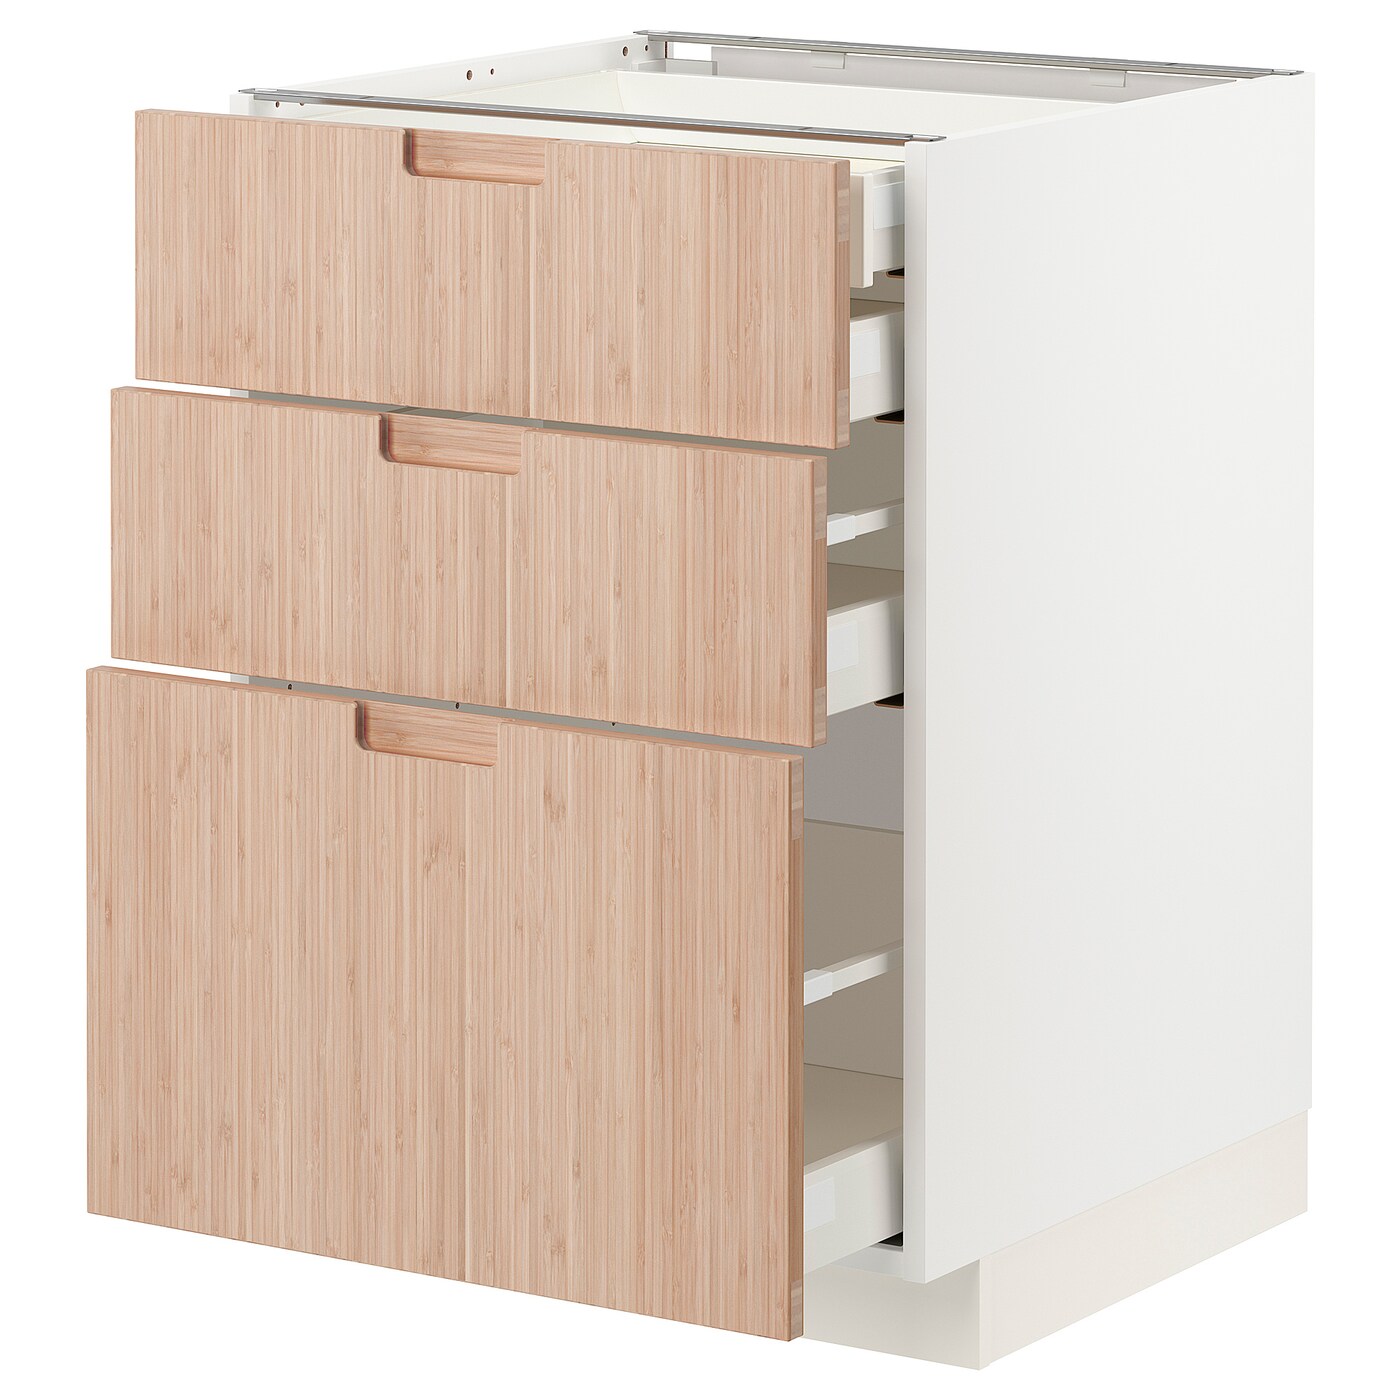 Напольный шкаф  - IKEA METOD MAXIMERA, 88x61,6x60см, белый/светло-коричневый, МЕТОД МАКСИМЕРА ИКЕА